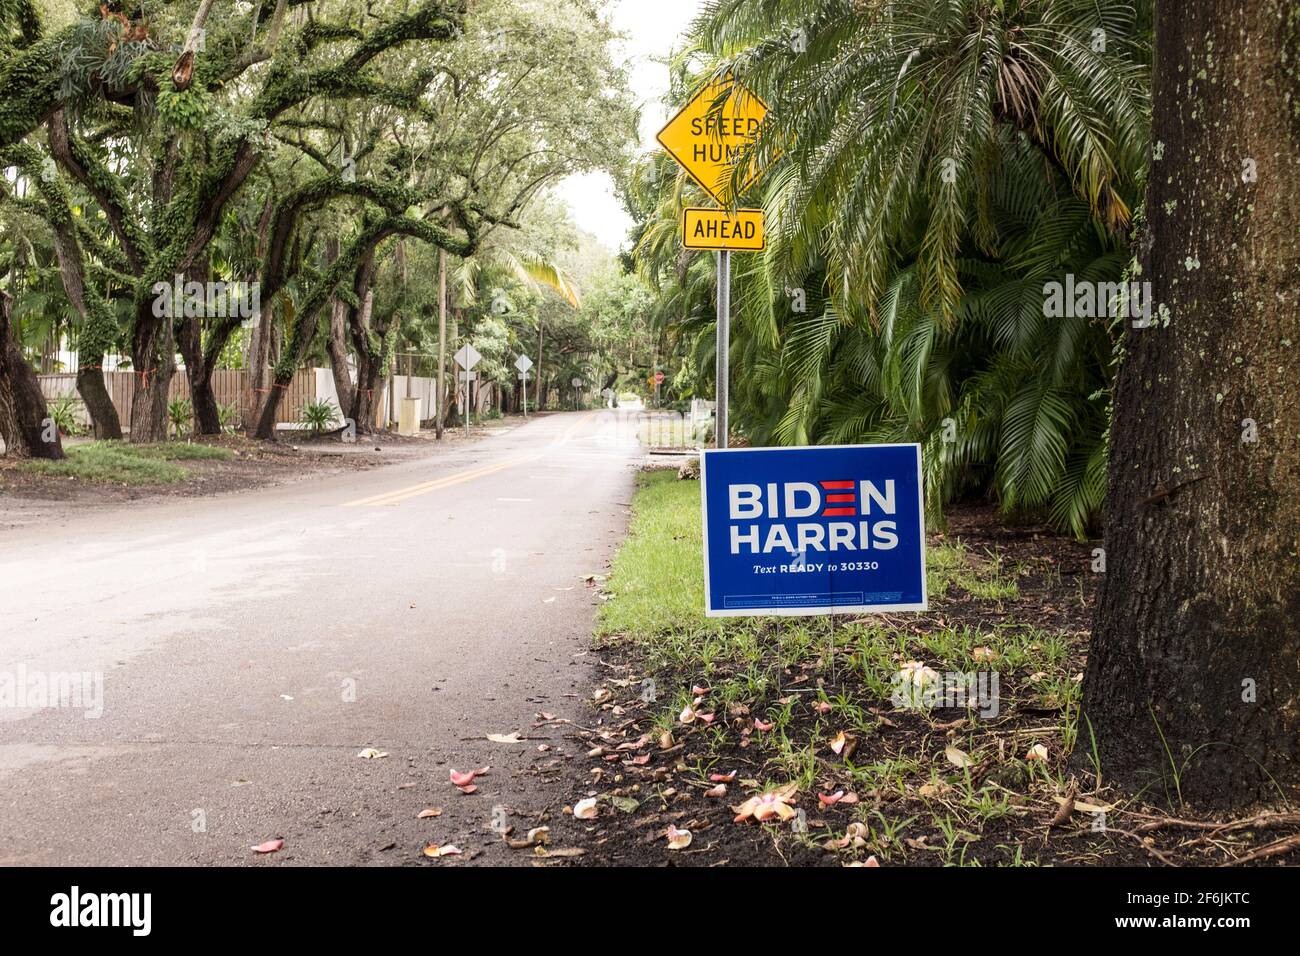 Una campagna politica segno lettura Biden Harris è visto dal lato della strada in un quartiere benestante, nel periodo fino alle elezioni generali di novembre 2020, a Miami, Florida, Stati Uniti Foto Stock